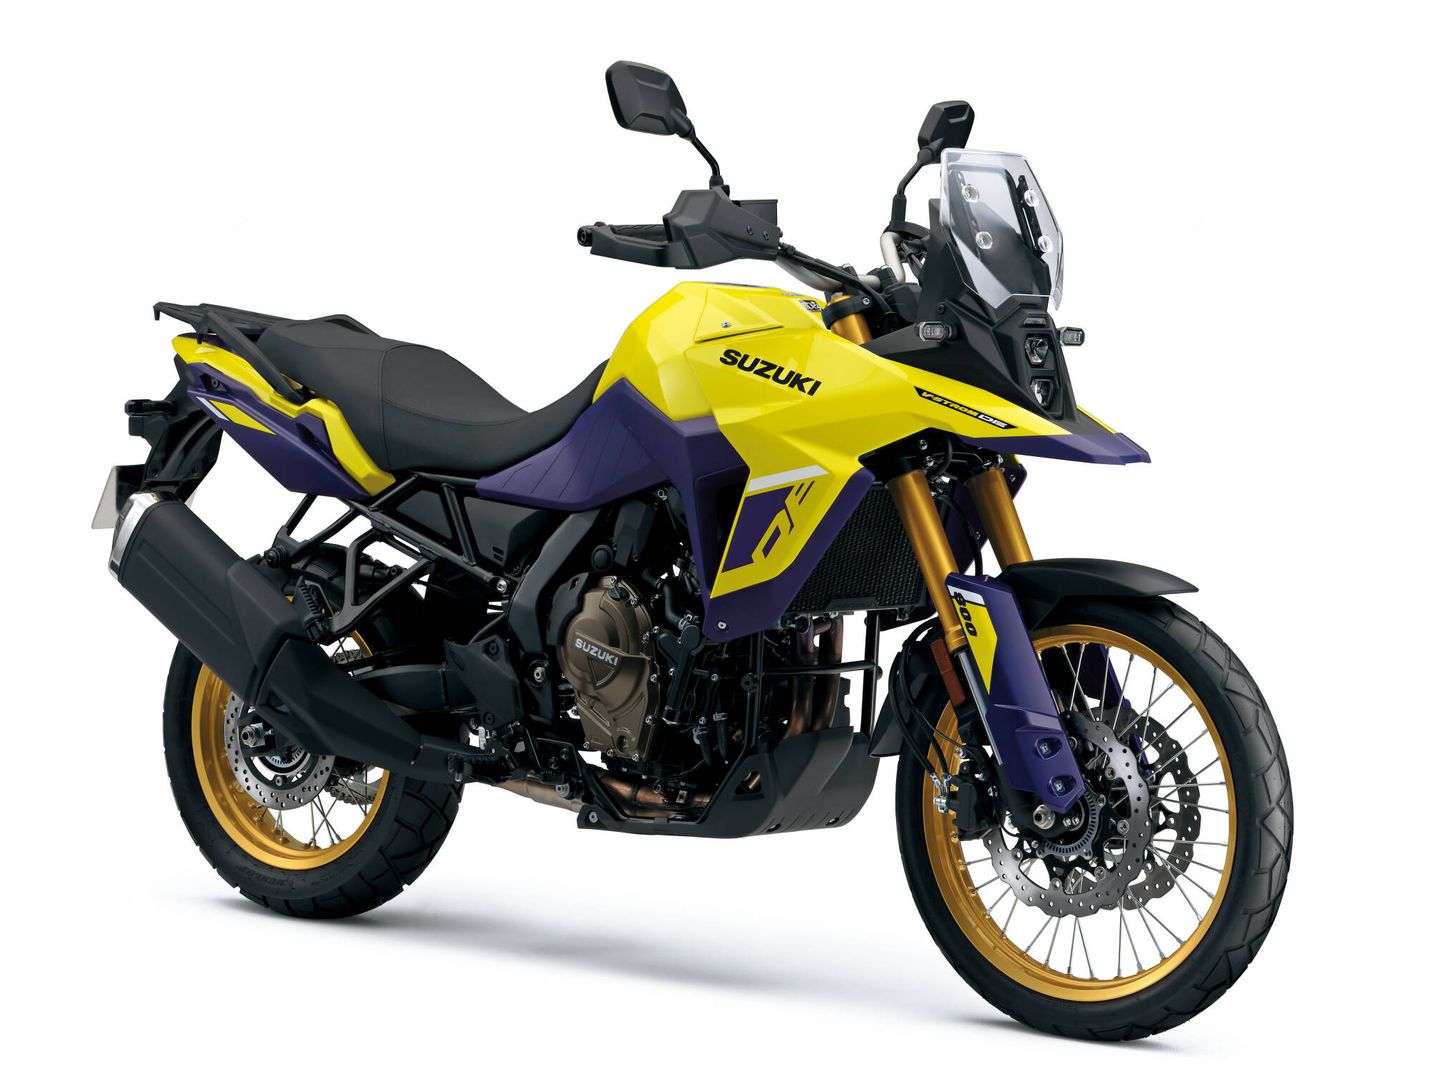 El color amarillo se inspira en las motos más legendarias de la marca japonesa en el Dakar.